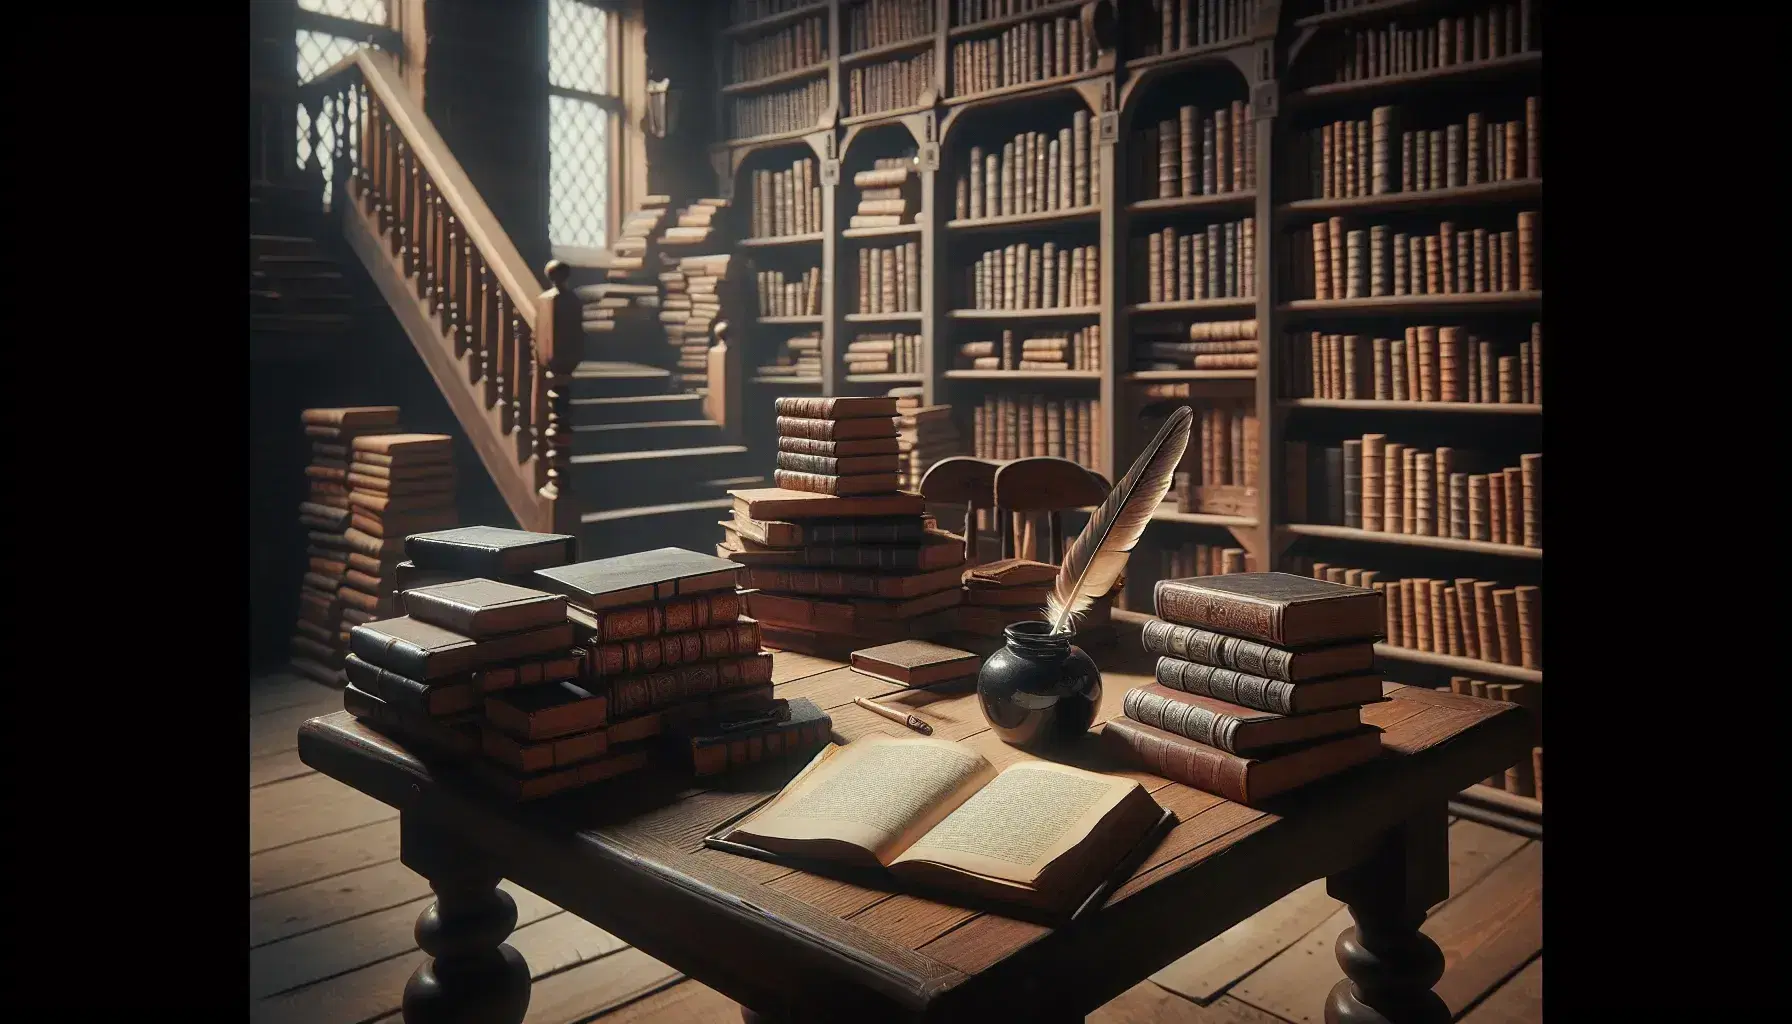 Biblioteca antigua con estantes de madera oscura llenos de libros, mesa con libro abierto y pluma en tintero, escalera al fondo y luz cálida.